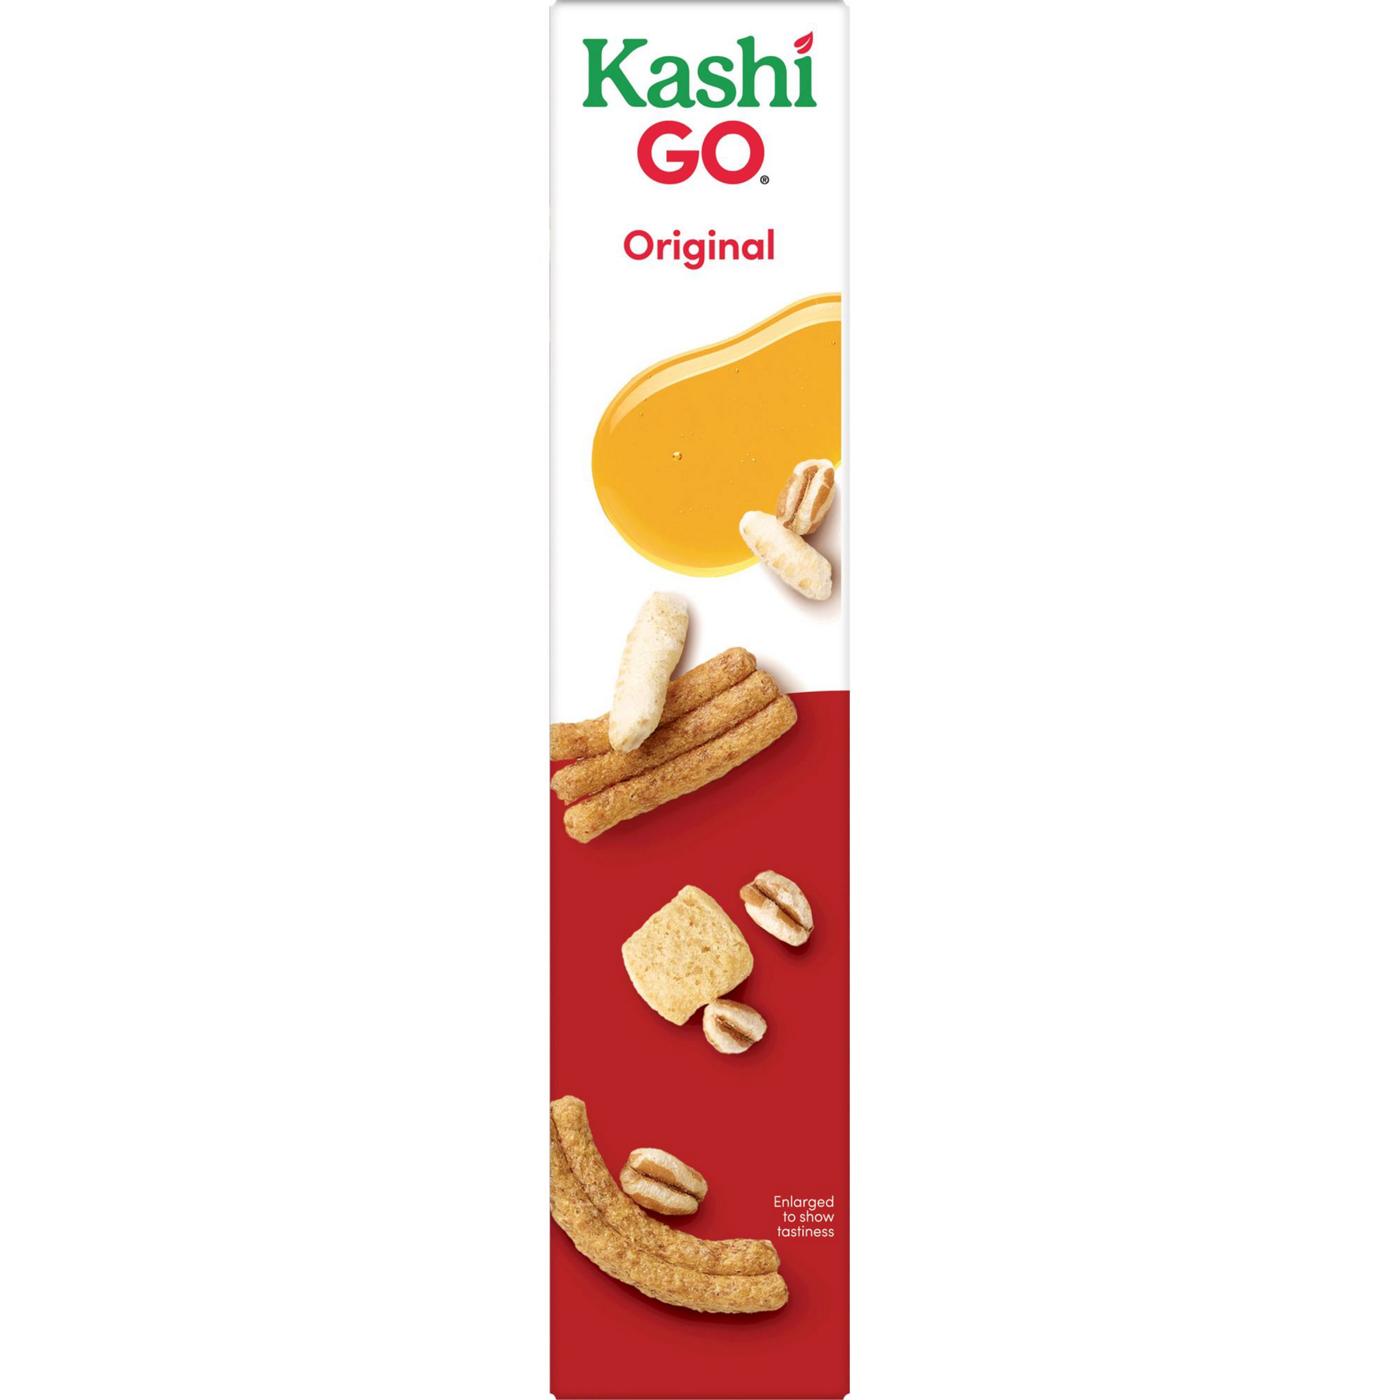 Kashi GO Original Breakfast Cereal; image 11 of 11